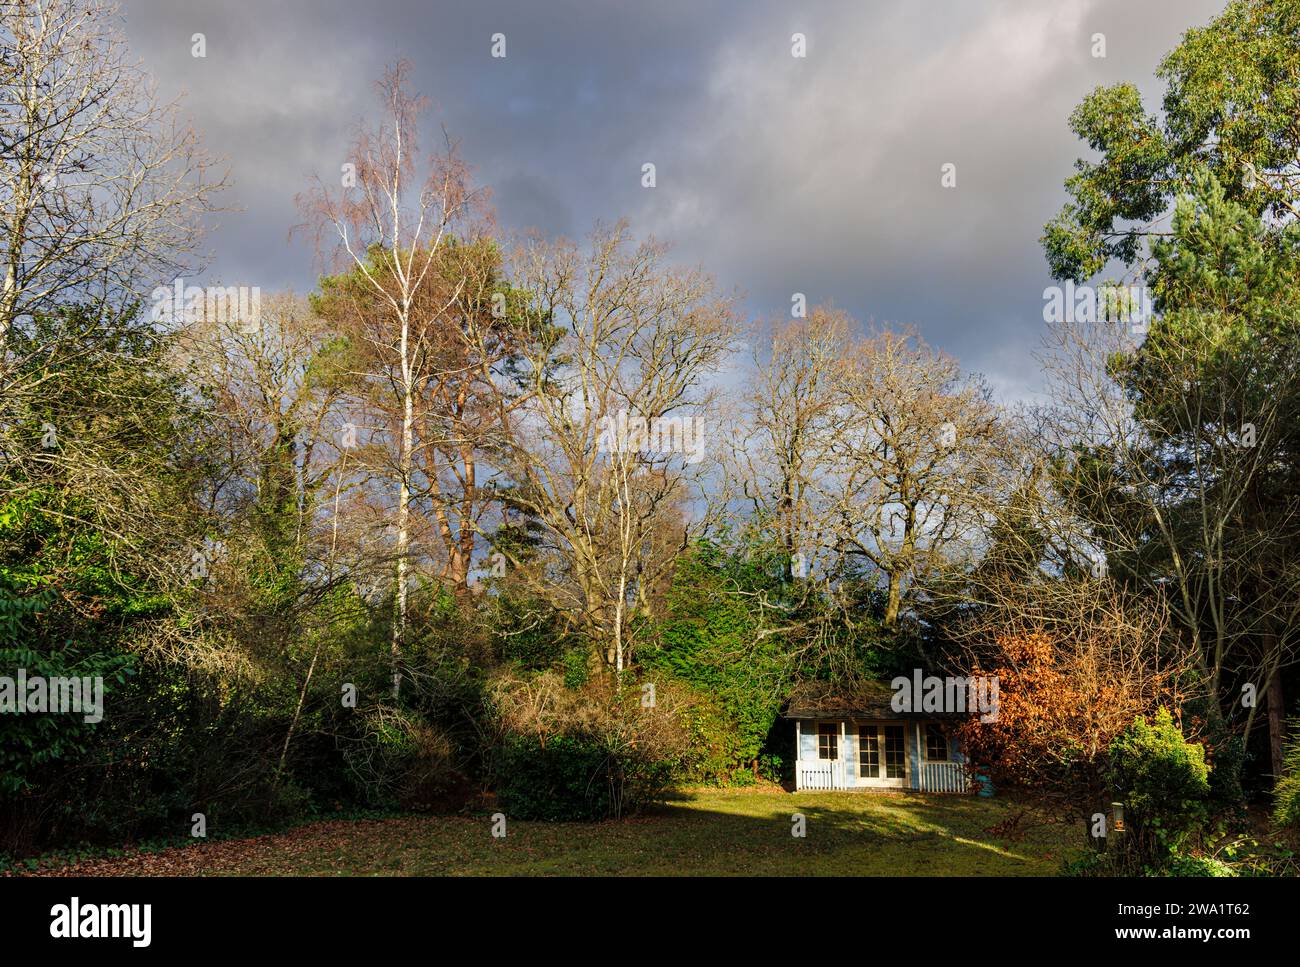 Météo hivernale au Royaume-Uni : abri de jardin et arbres à feuilles caduques, y compris bouleaux argentés (Betula pendula) au soleil contre des nuages de pluie gris foncé, Surrey Banque D'Images